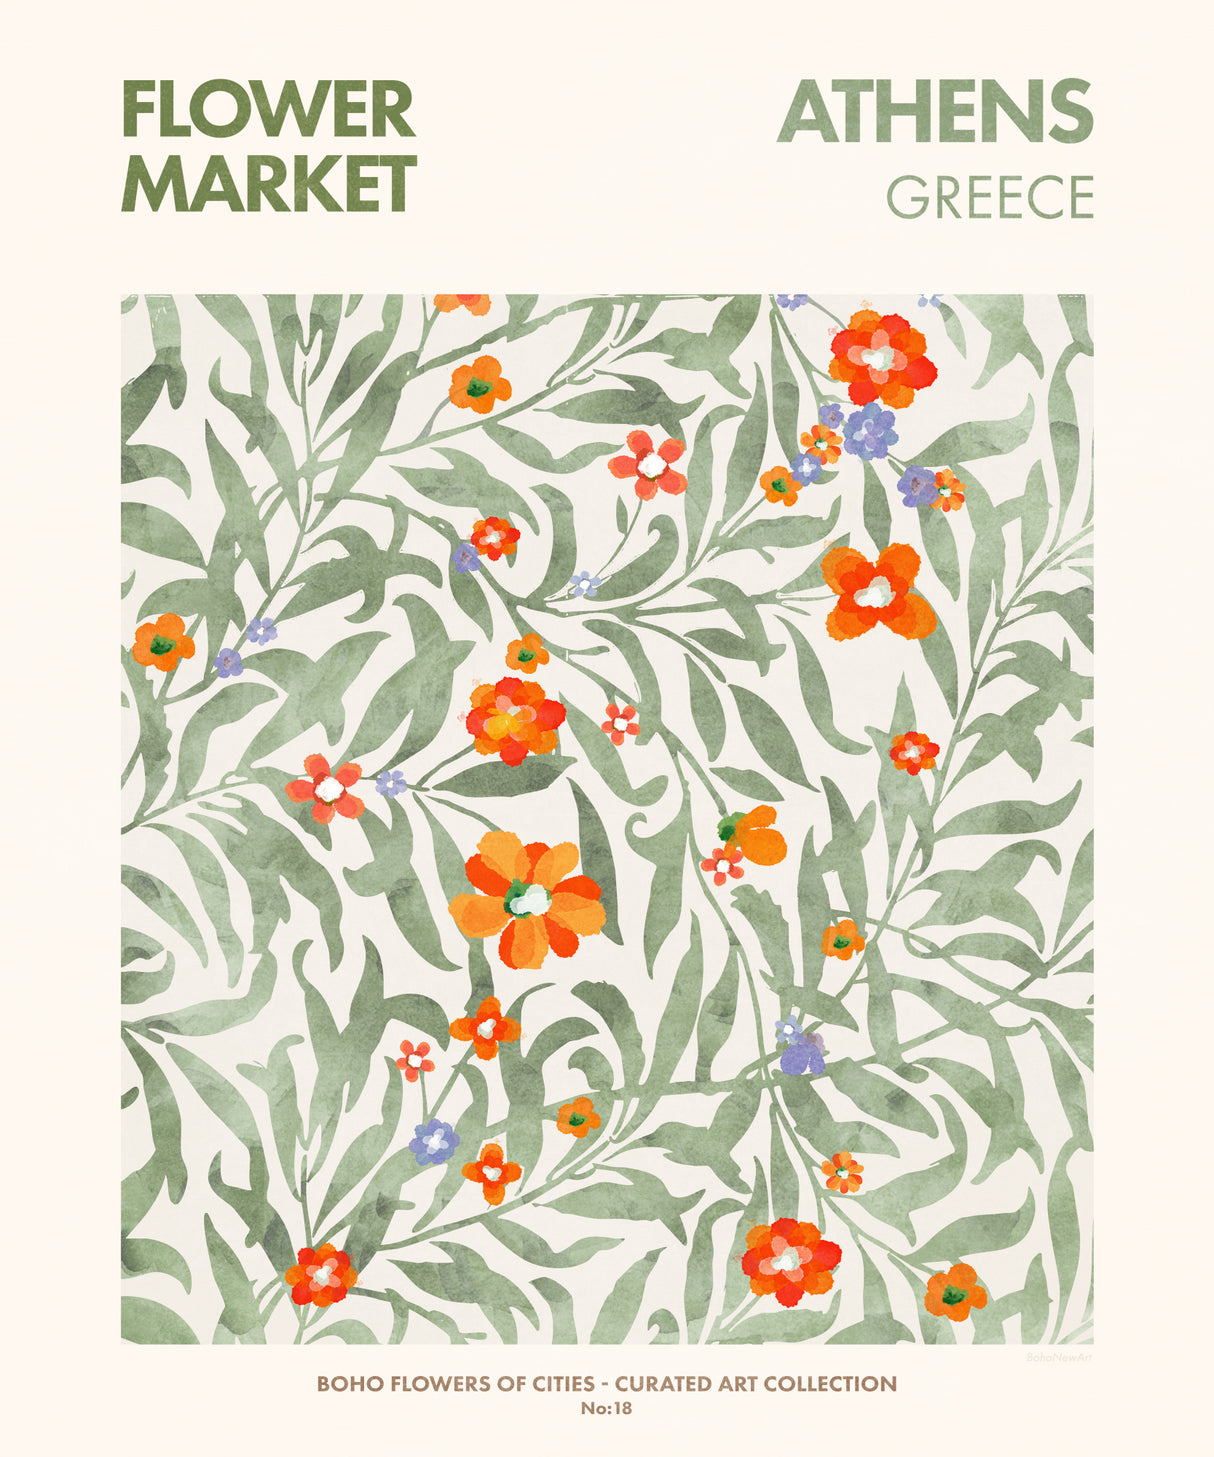 Athens Poster och Canvastavla